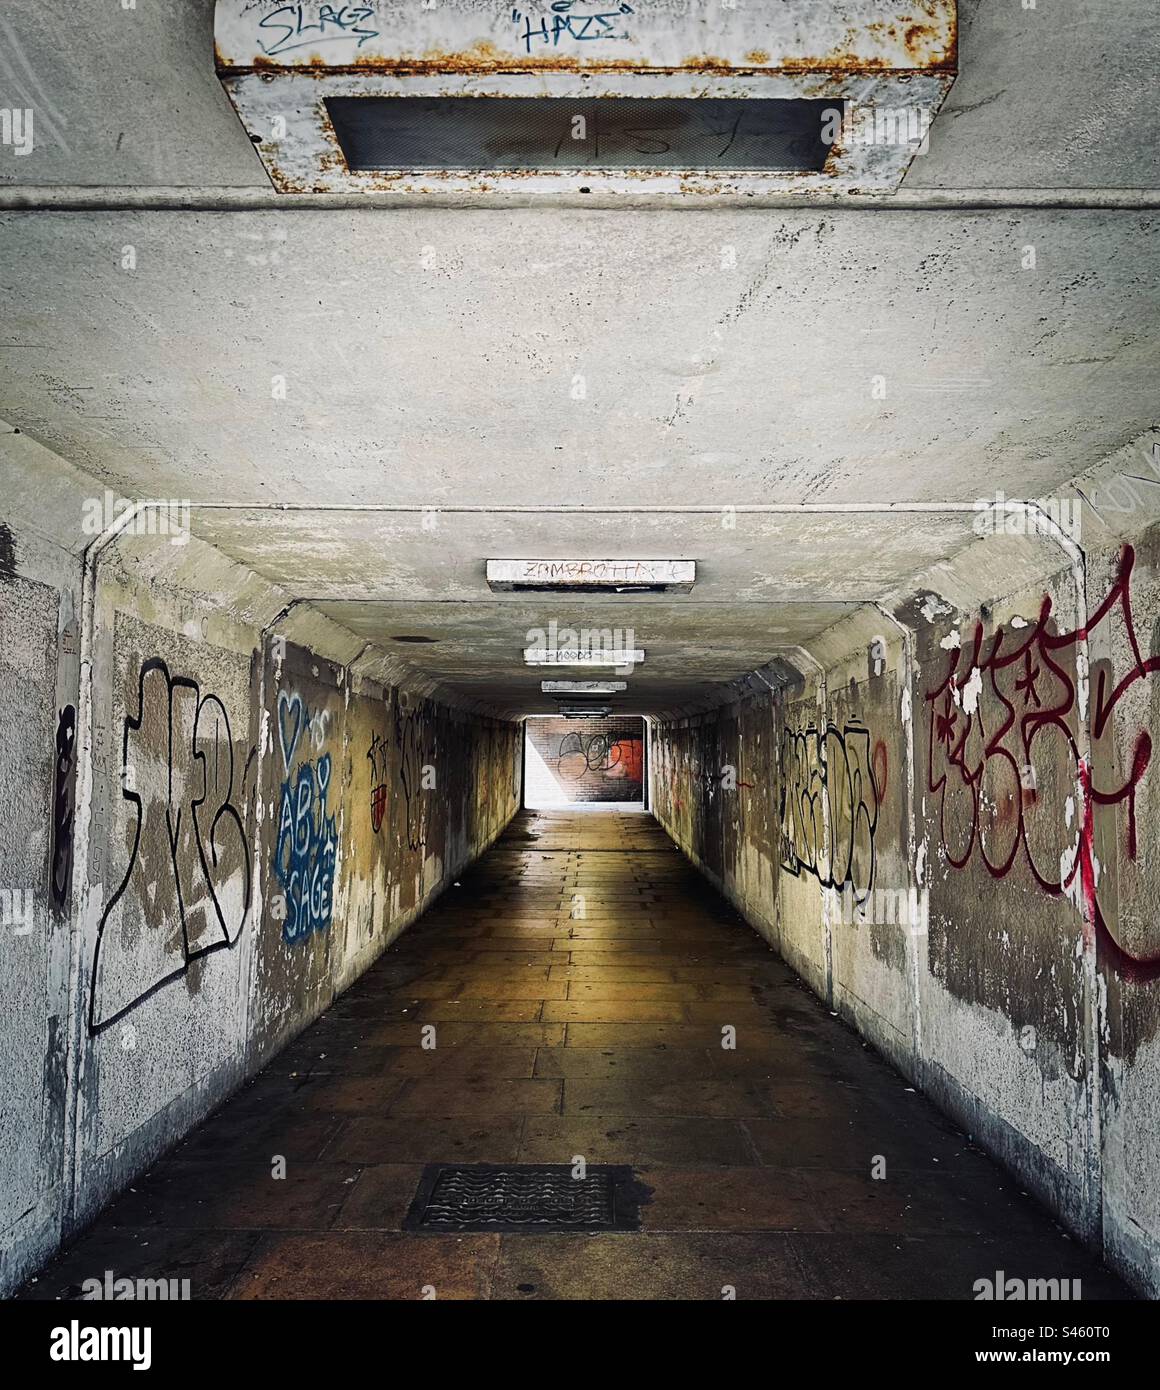 Eine U-Bahn sieht nicht einladend aus - dunkel, feucht und heruntergekommen. Graffiti-besprühte Wände befinden sich auf beiden Seiten des Gangs. Stockfoto